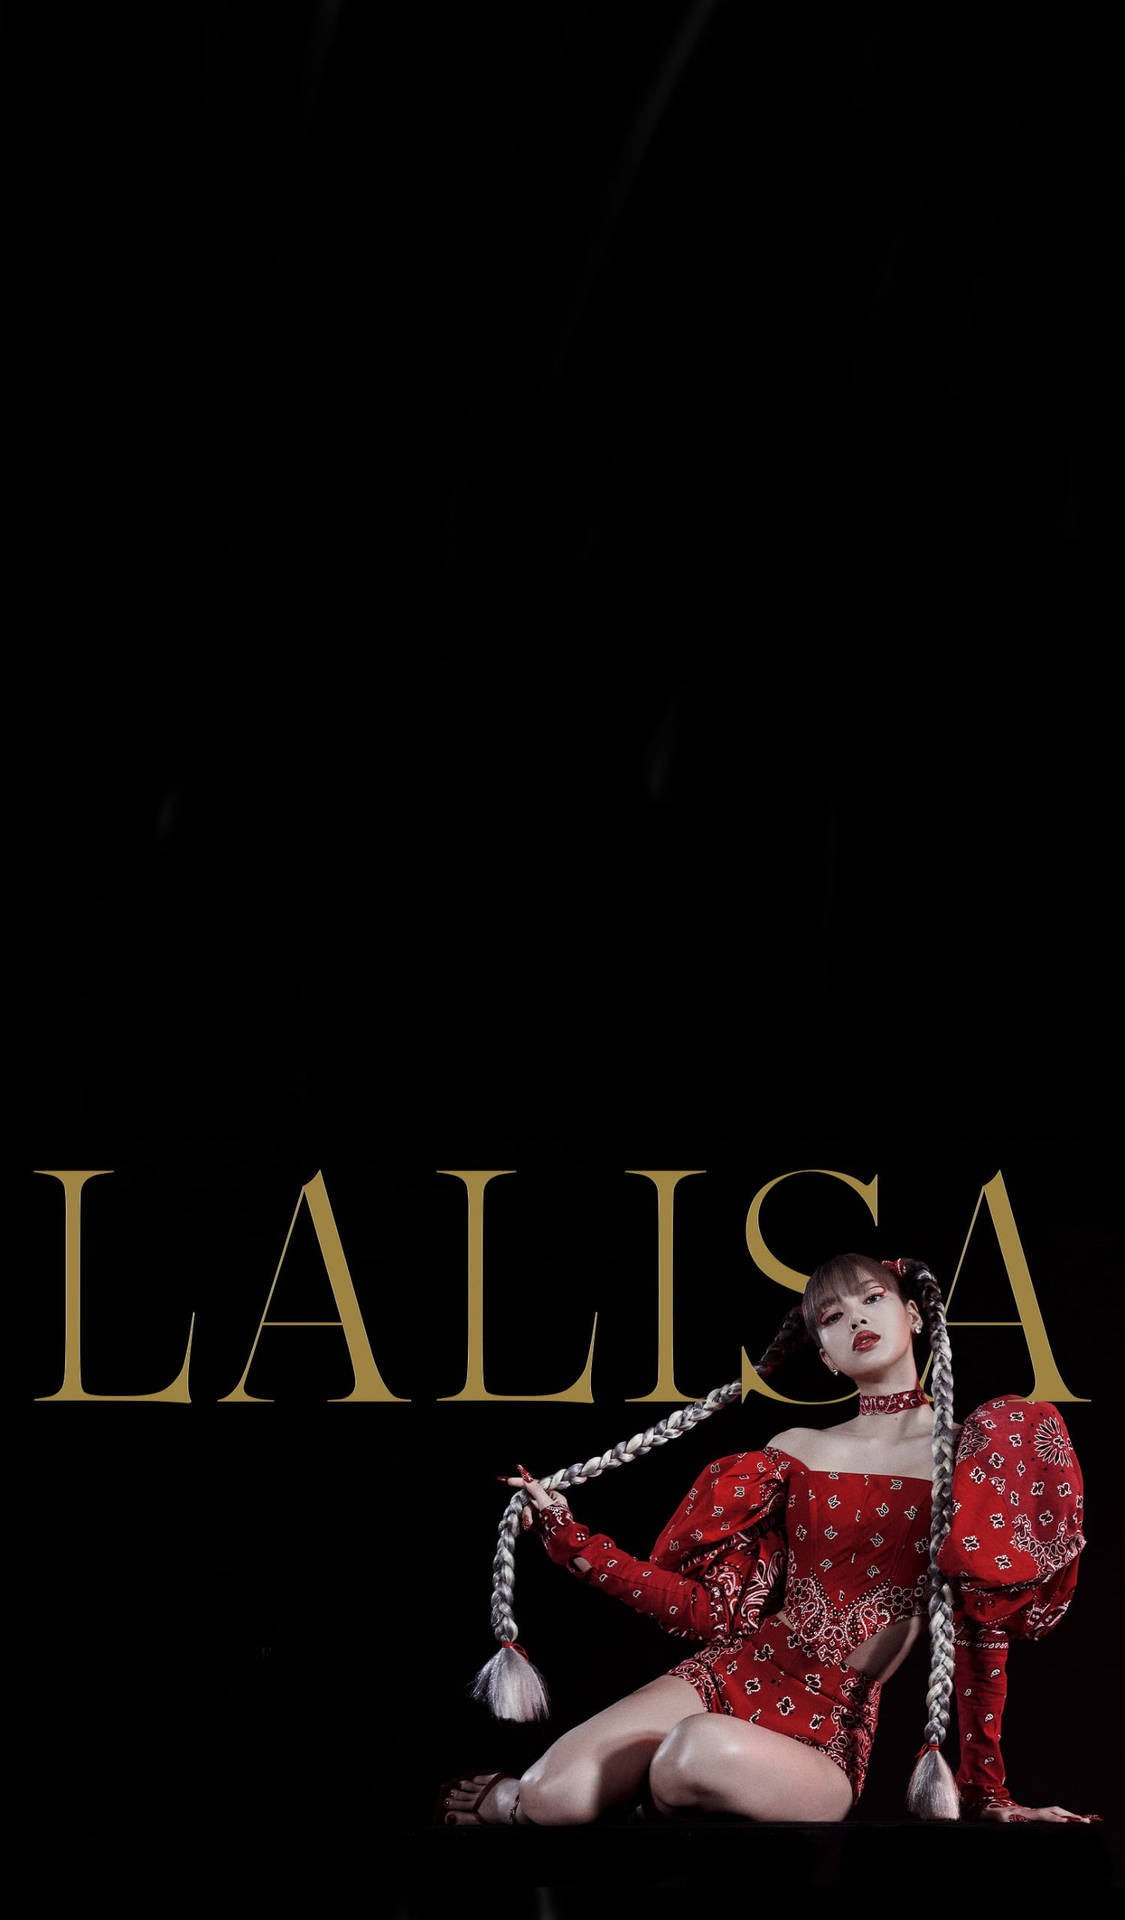 Lisablackpink Hd Musikvideo Lalisa Poster Wallpaper